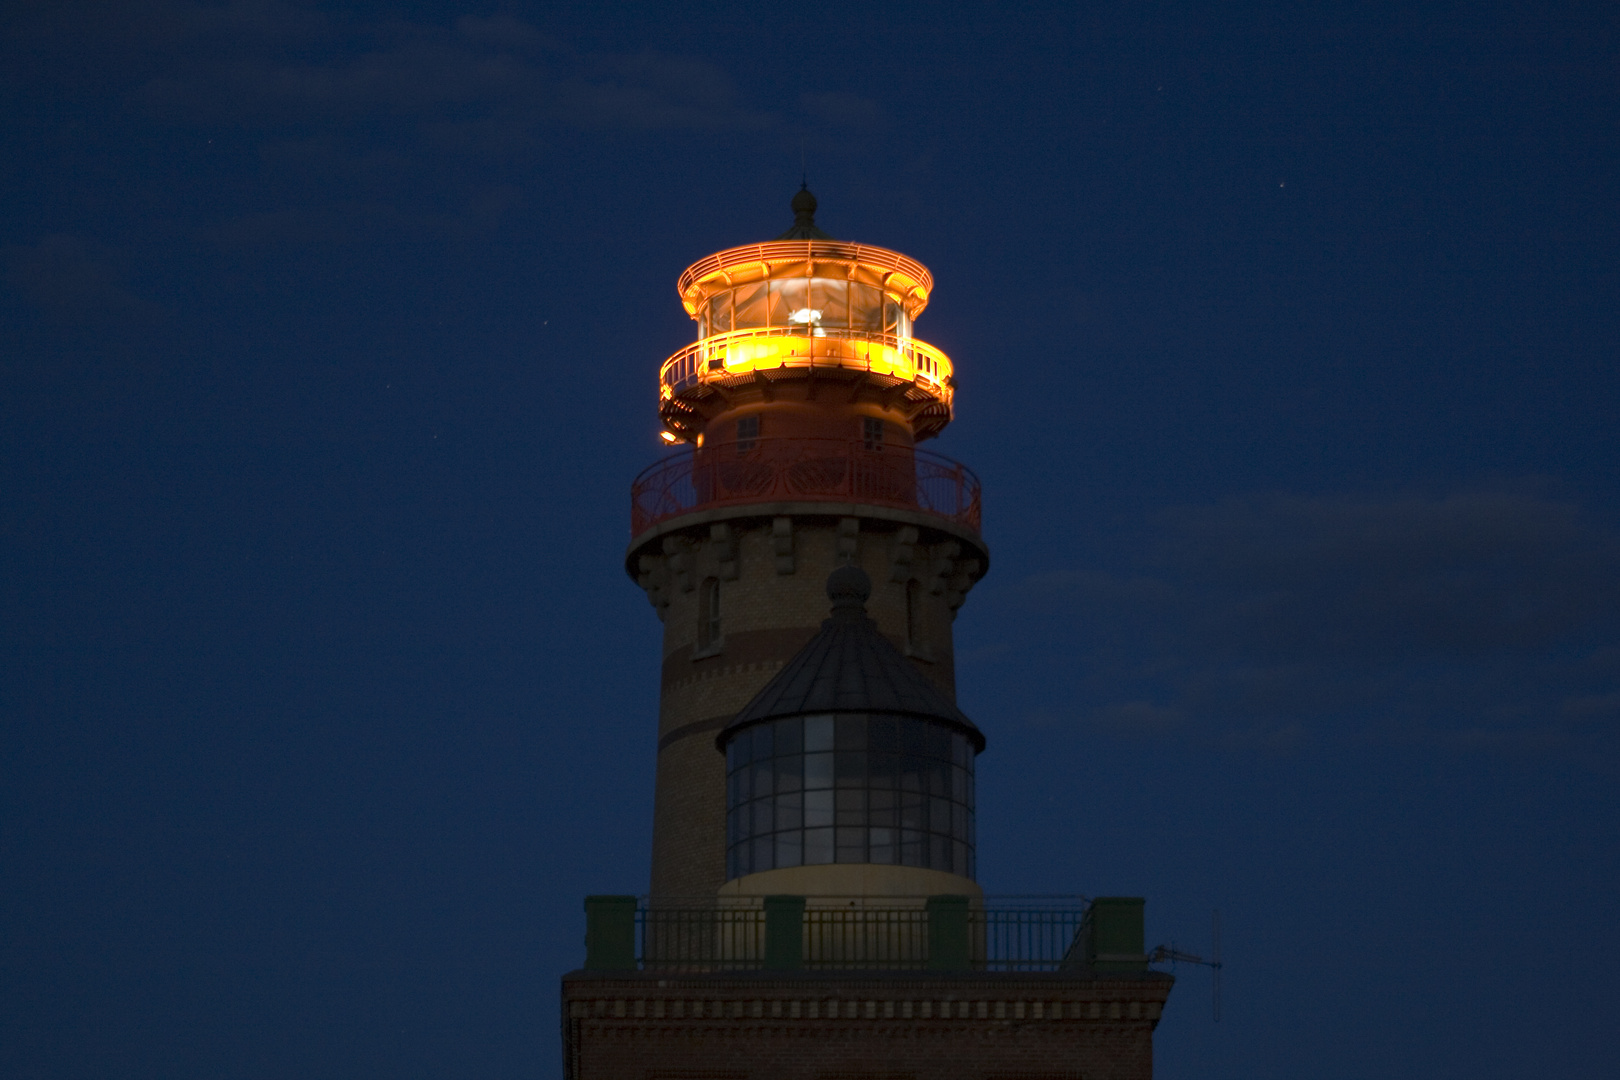 Leuchtturm Kap Arkona bei Nacht